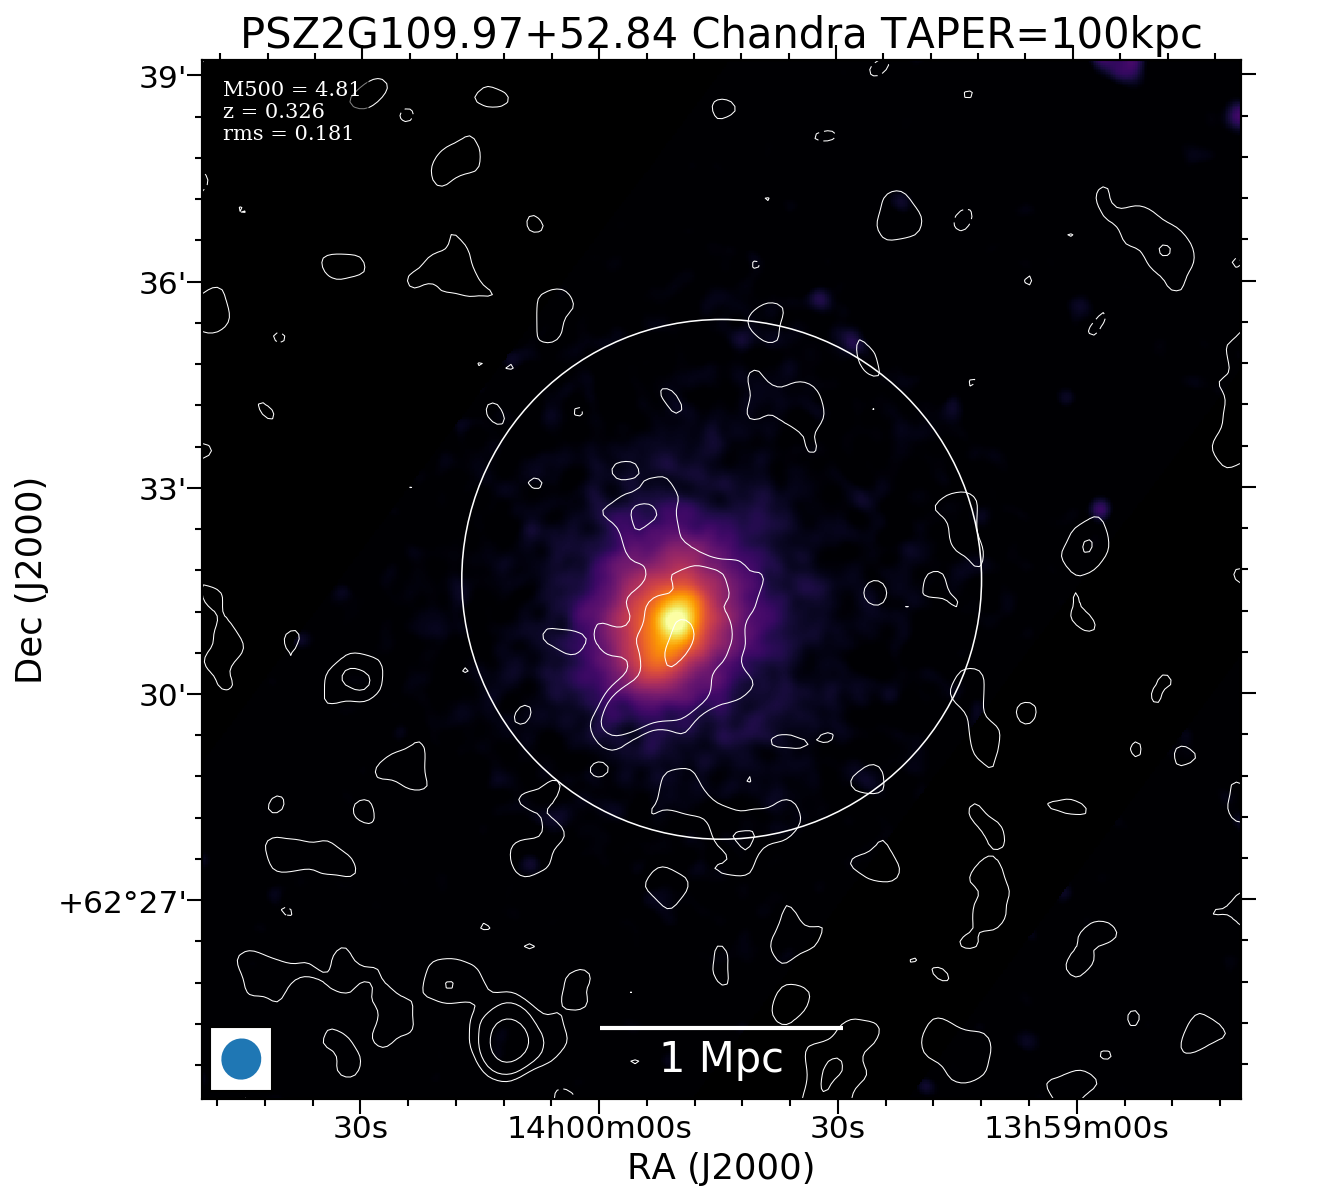 No Chandra data available